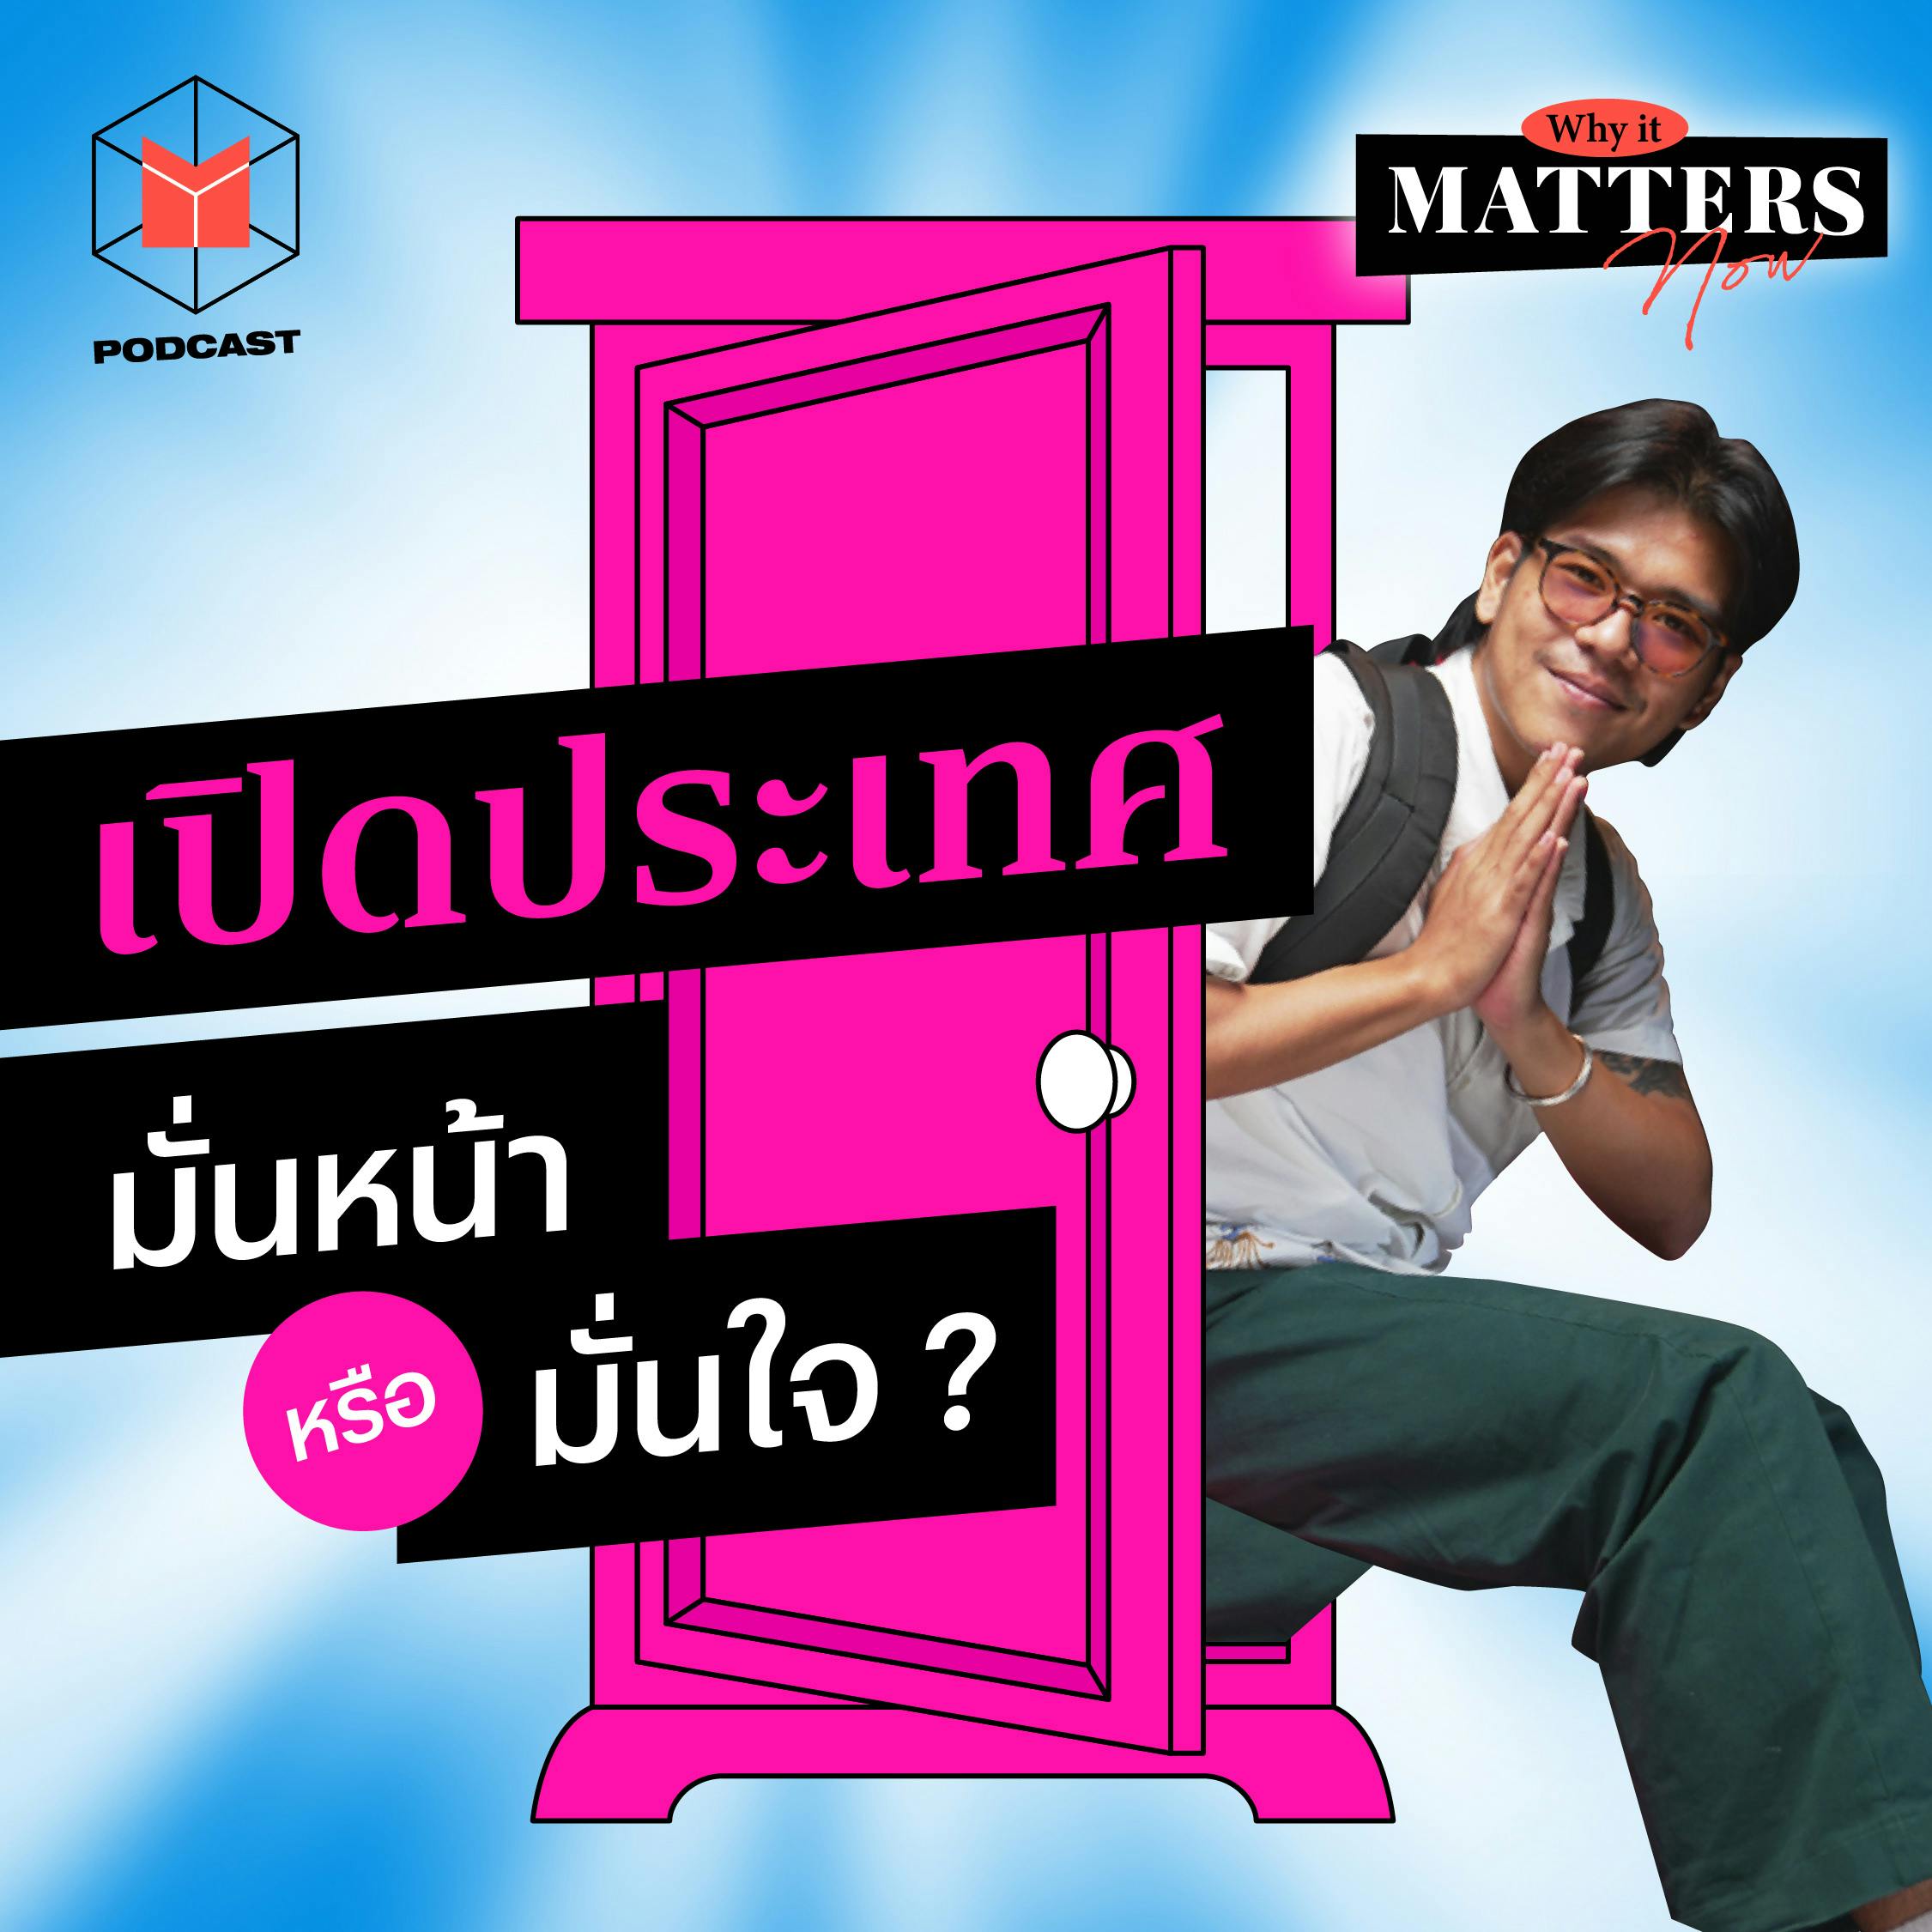 มั่นหน้าหรือมั่นใจ? เมื่อไทยเตรียมเปิดประเทศ  | Why It MATTERs NOW